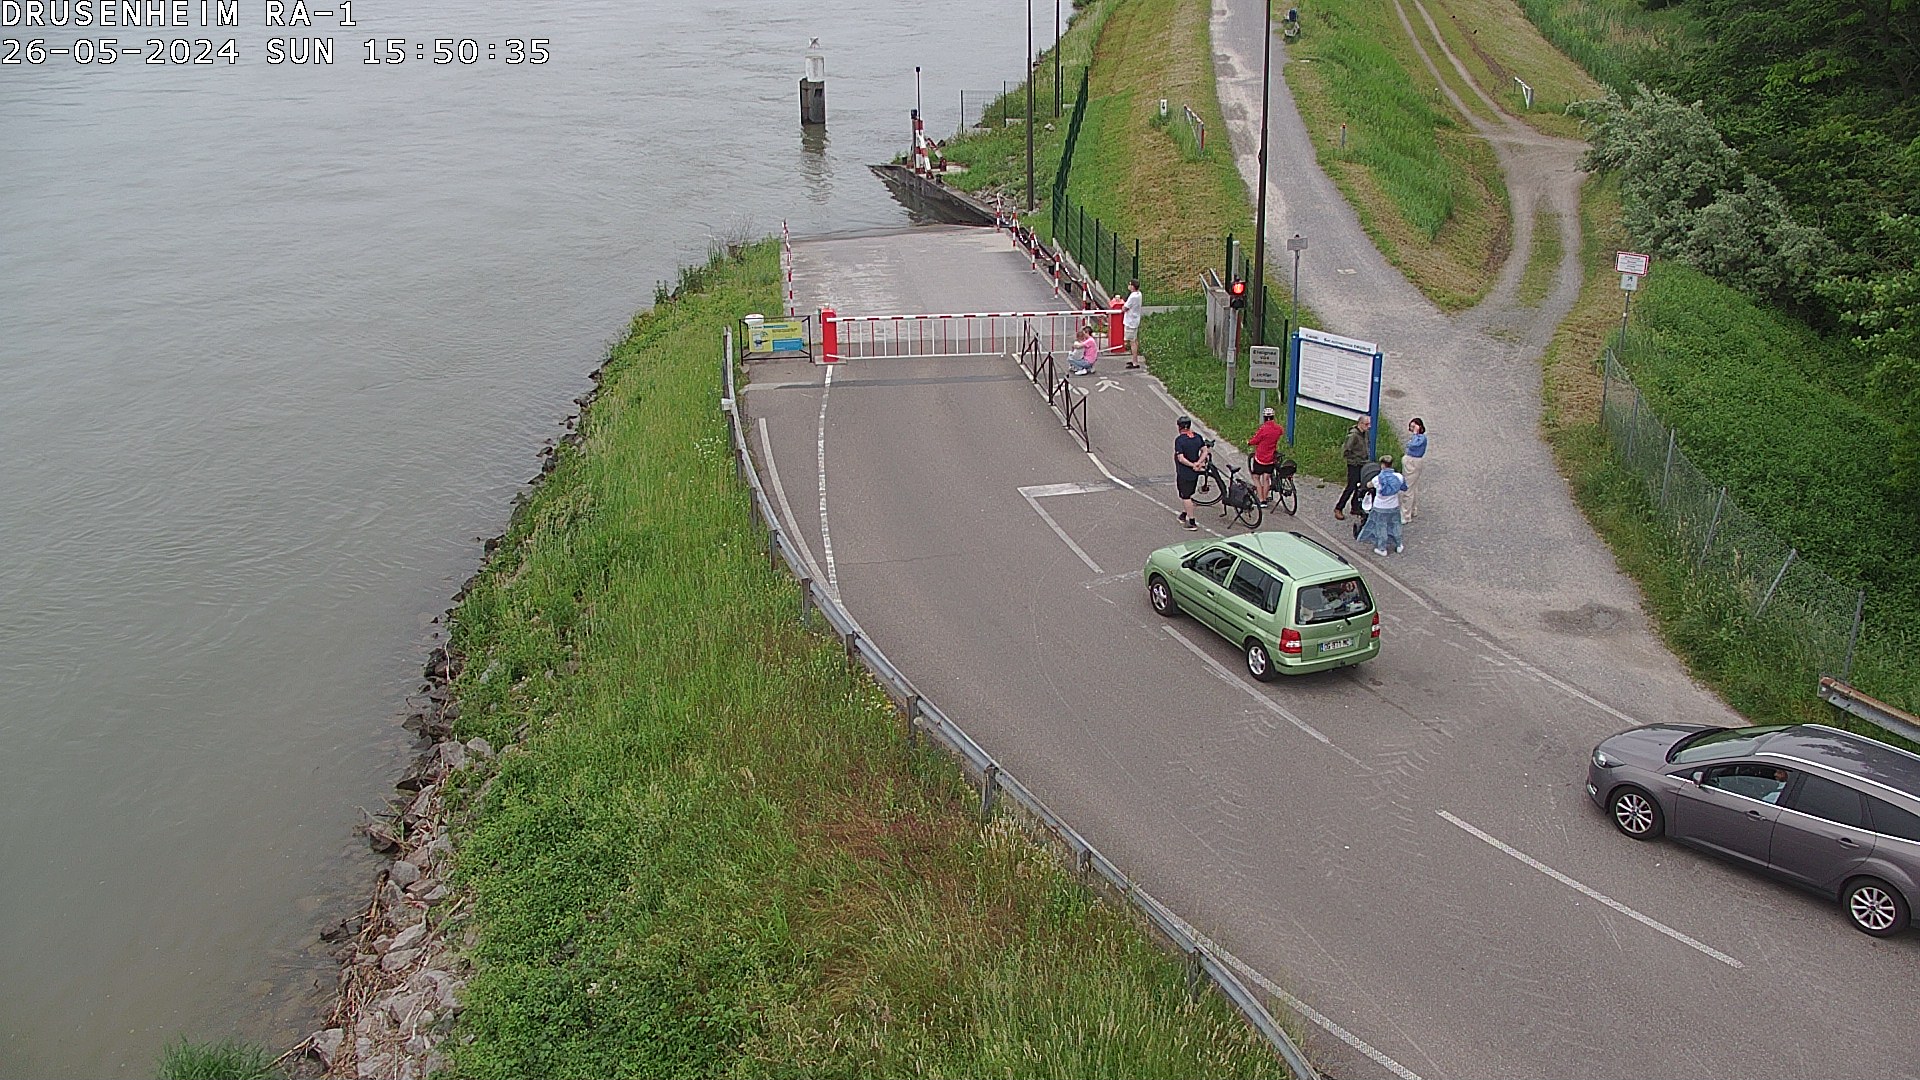 Webcam donnant sur la rampe d'embarquement du bac de Drusenheim